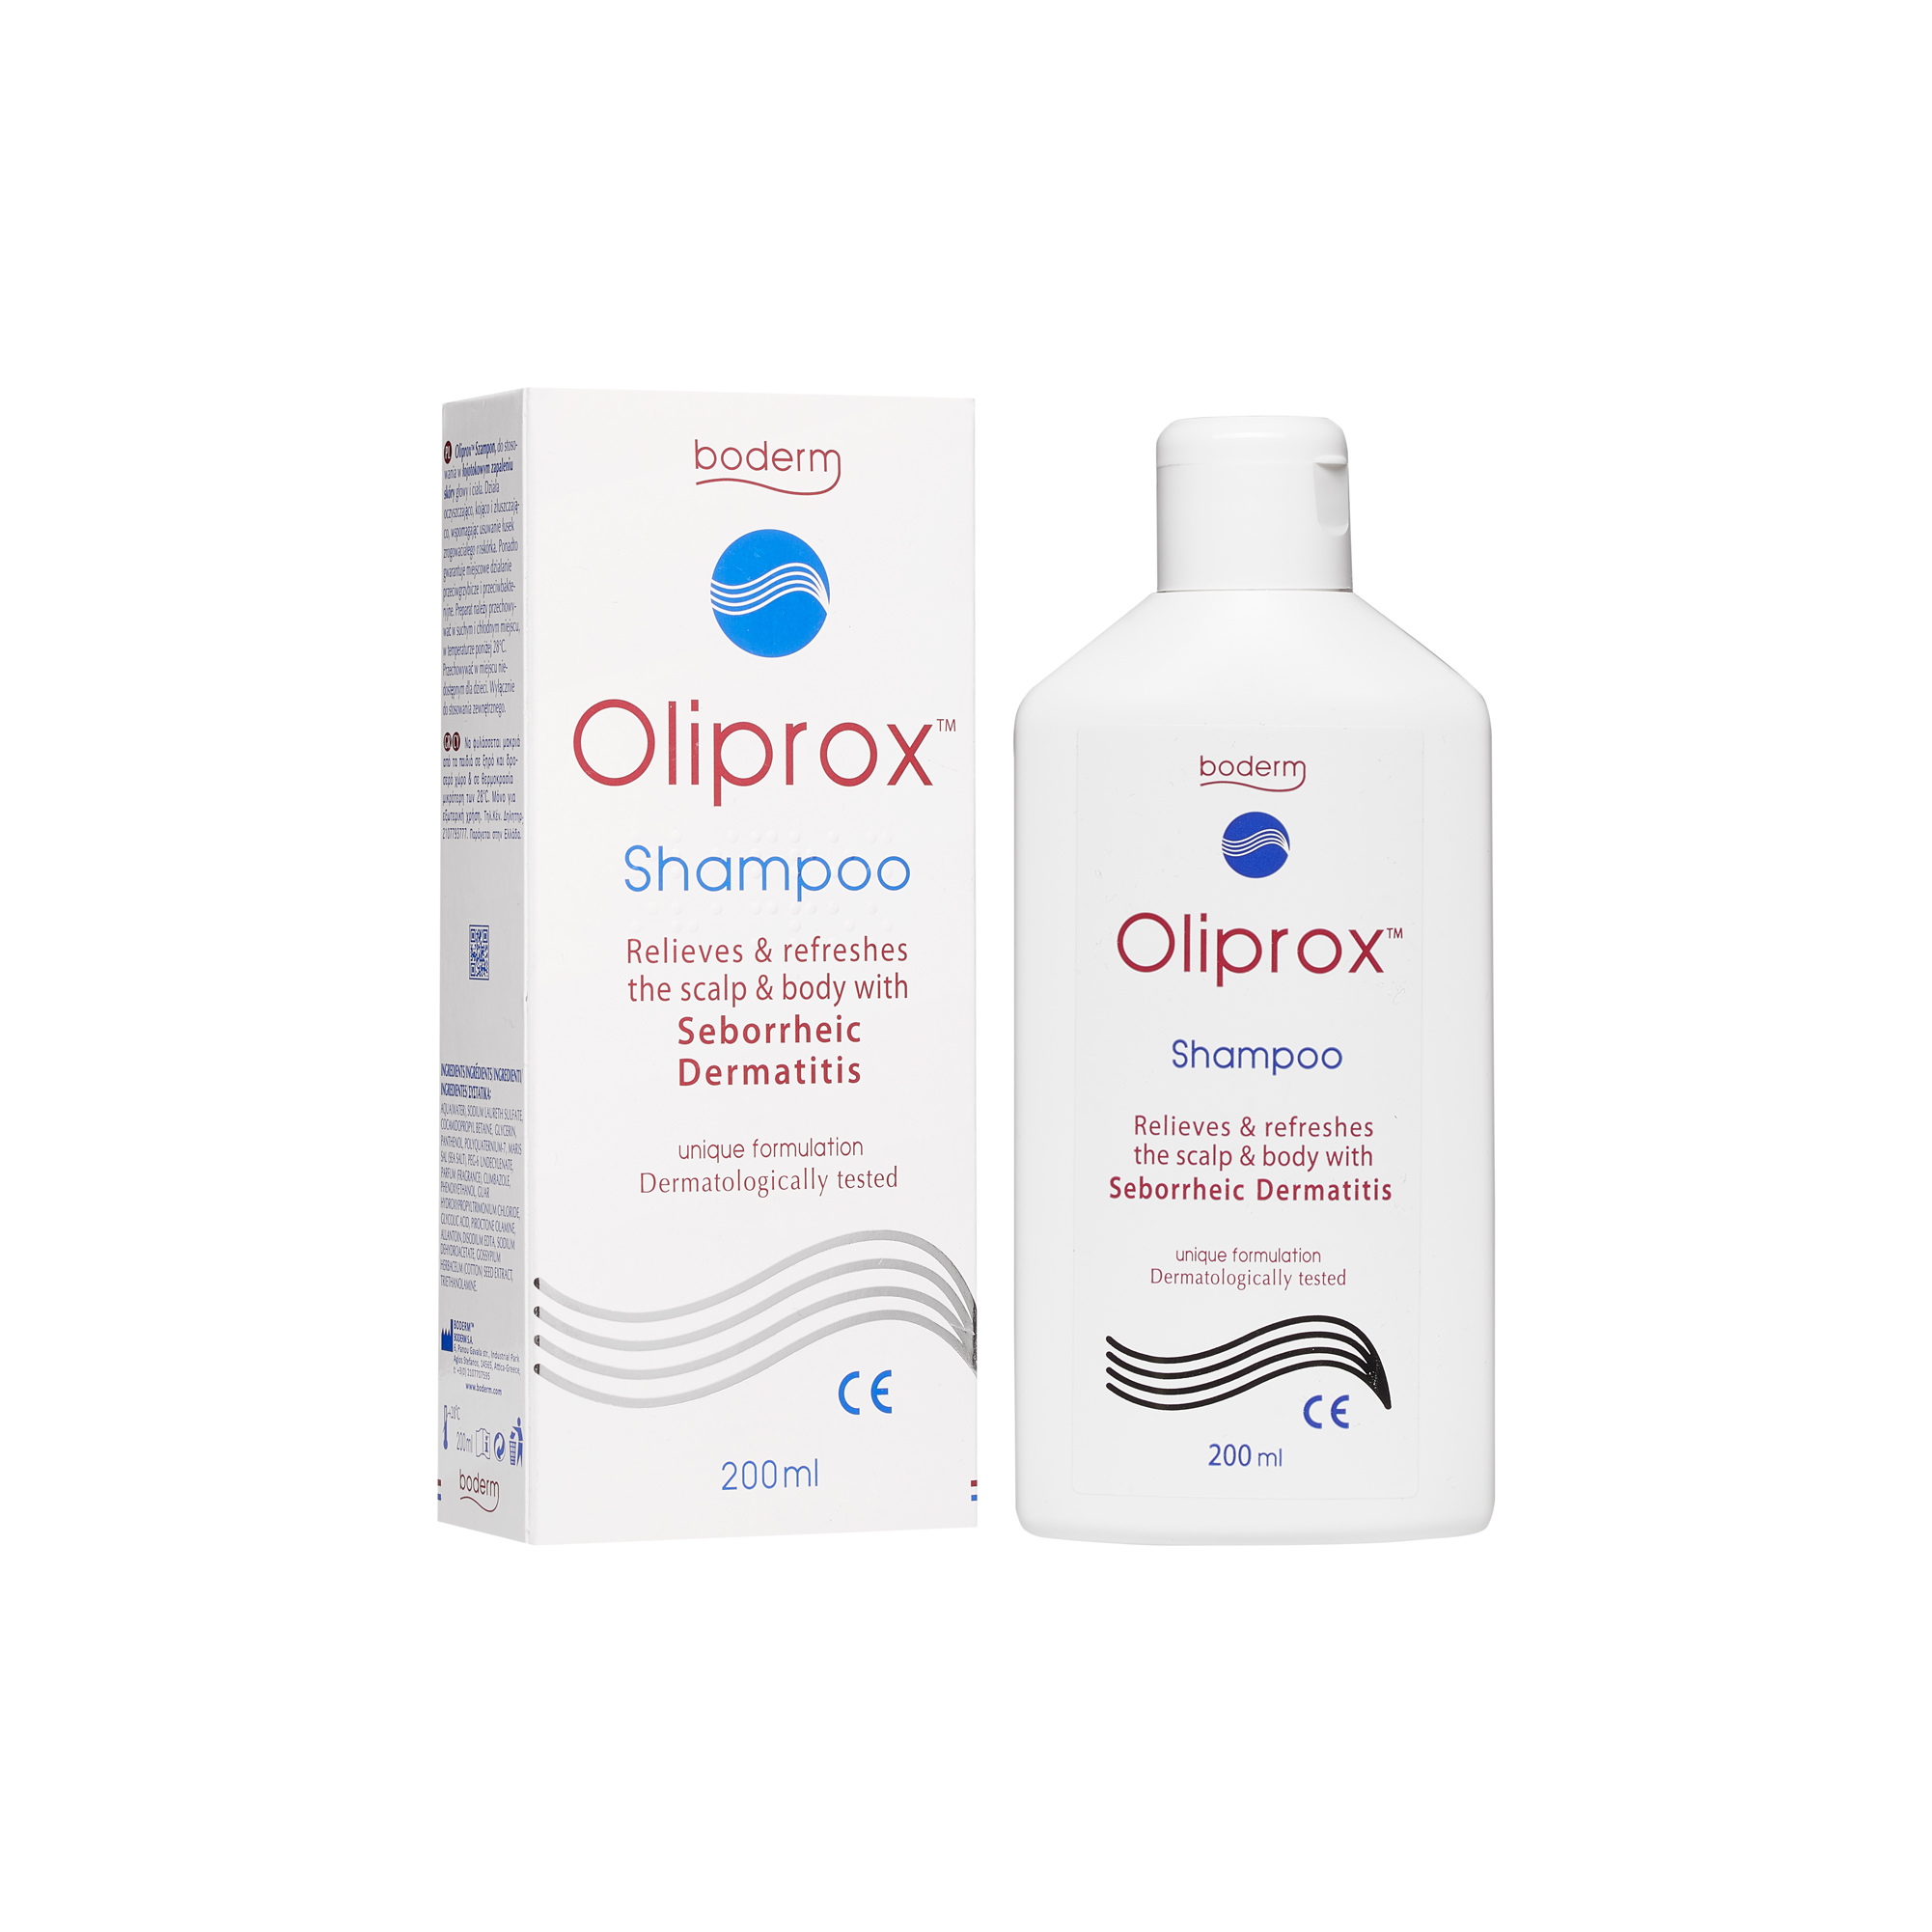 oliprox szampon zamiennik